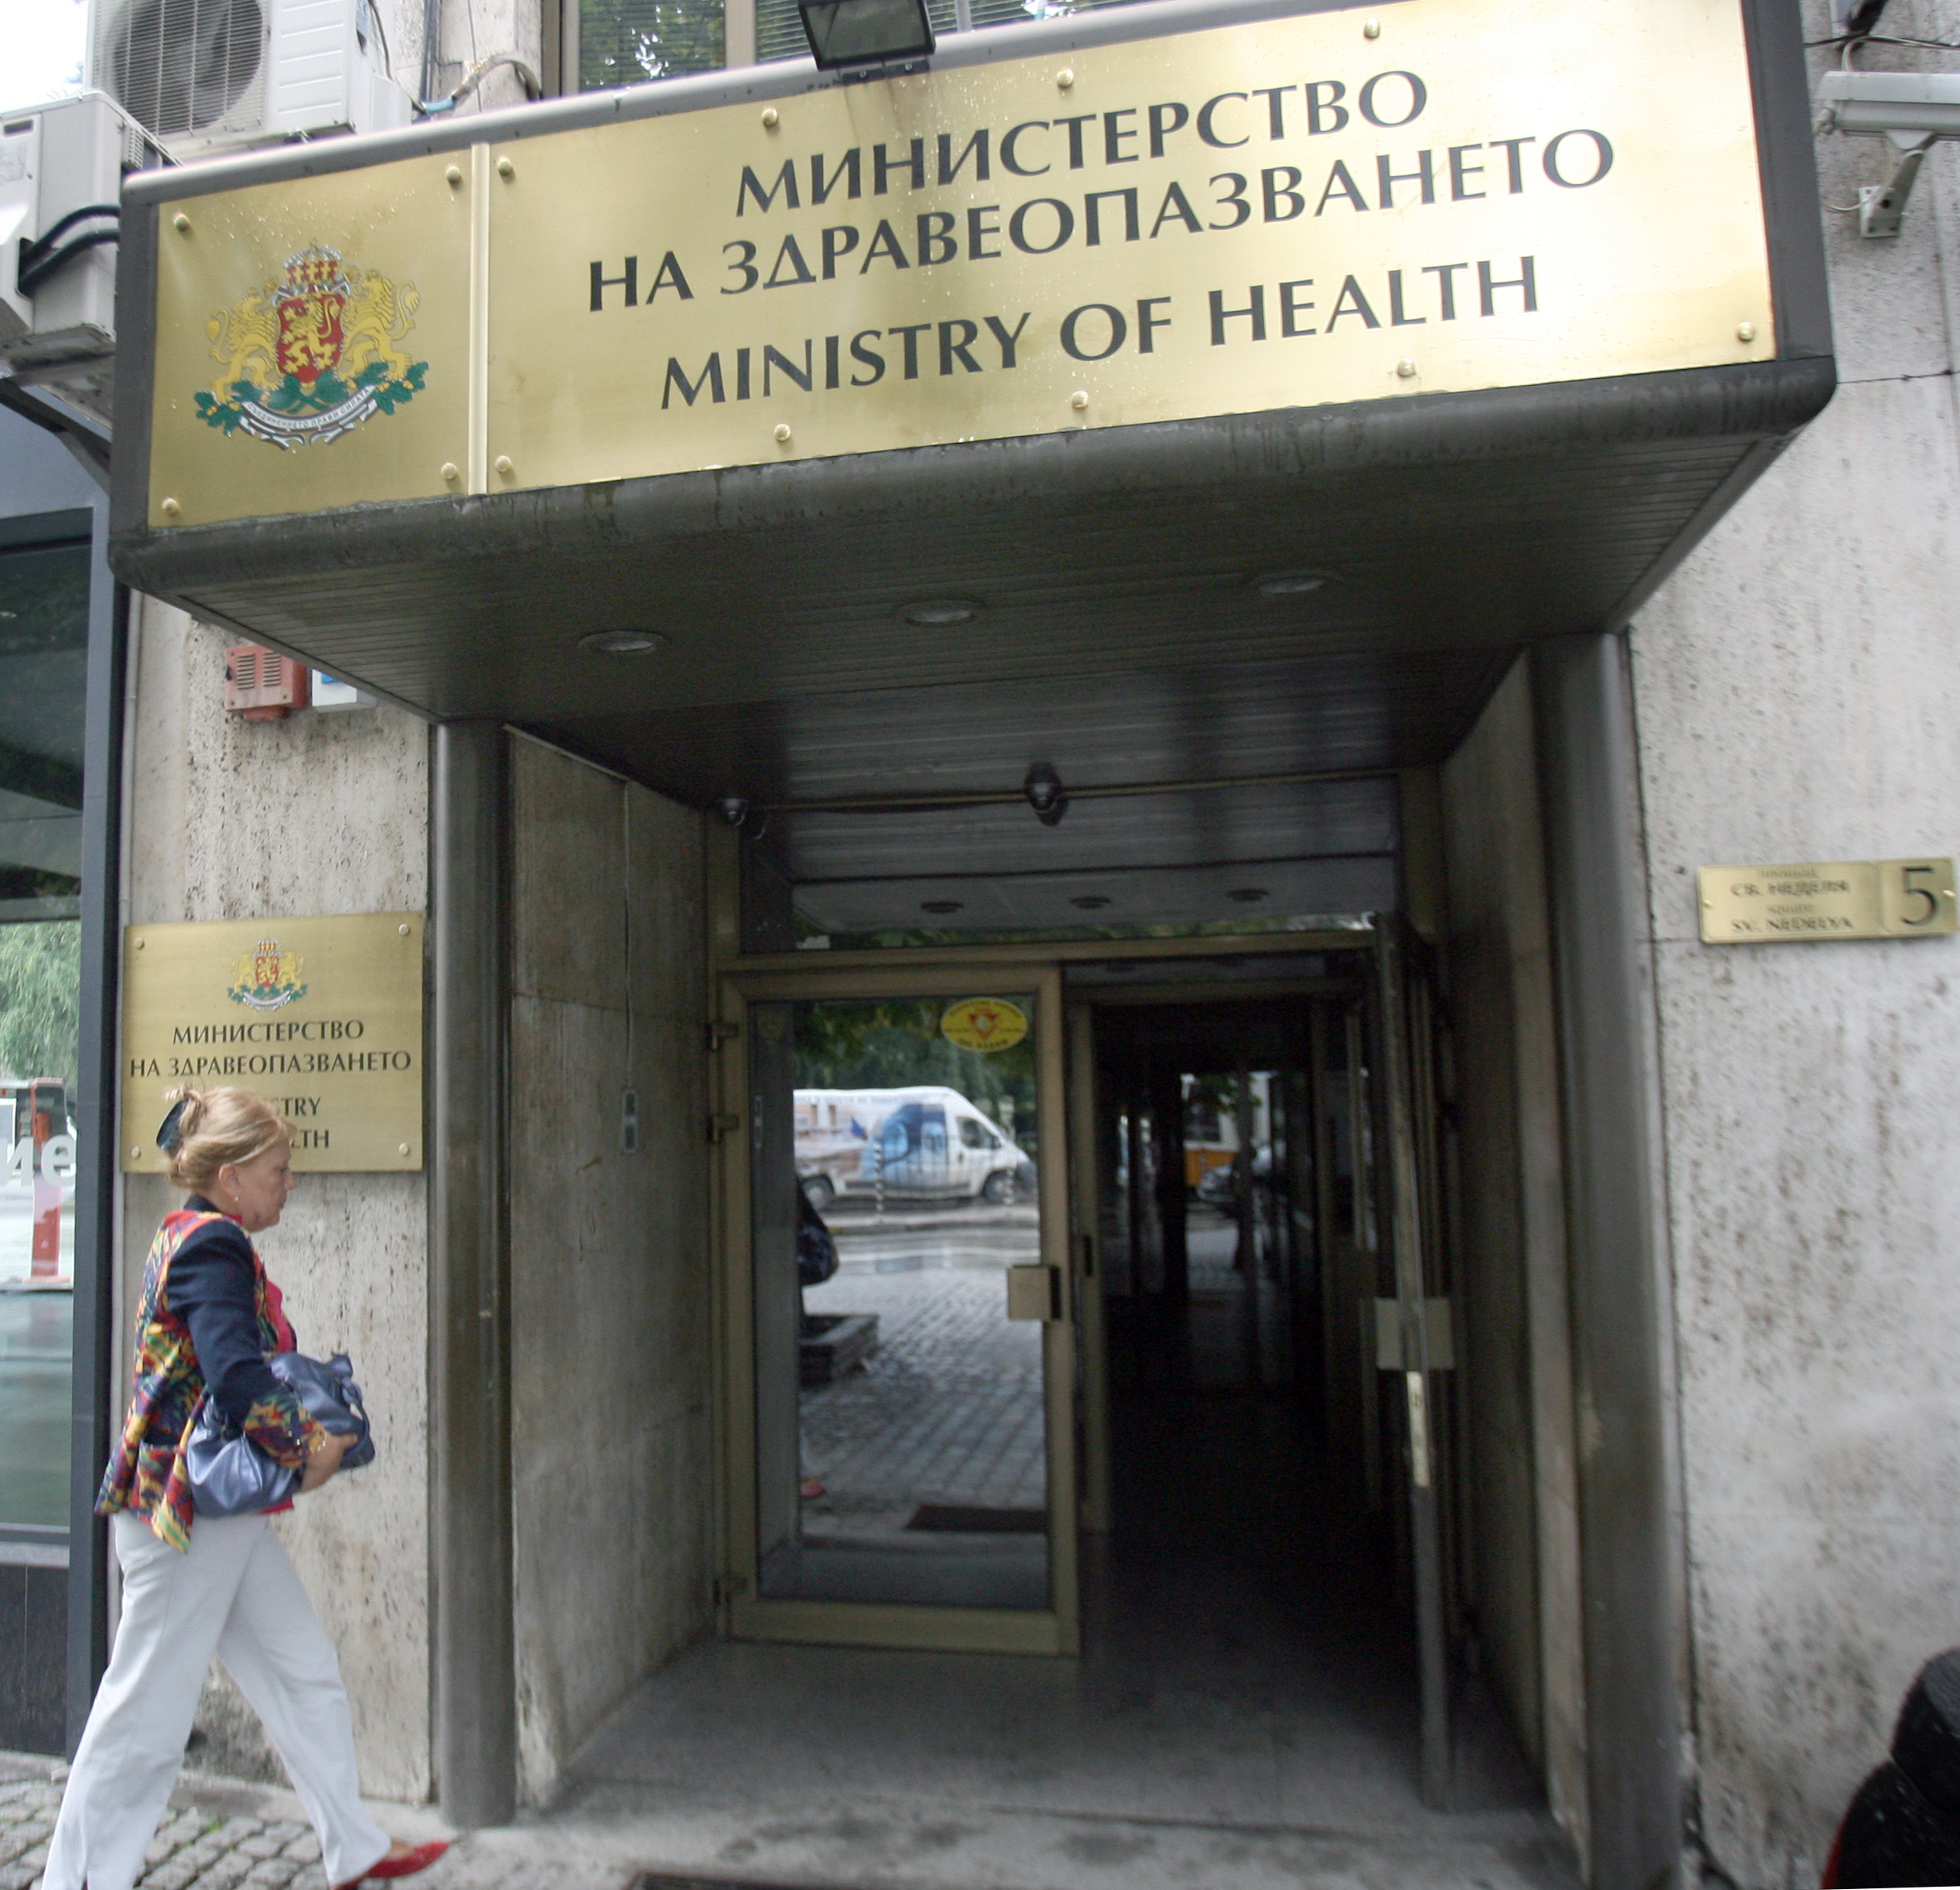 Дружеството е под шапката на Министерството на здравеопазването и произвежда лекарства и ваксини